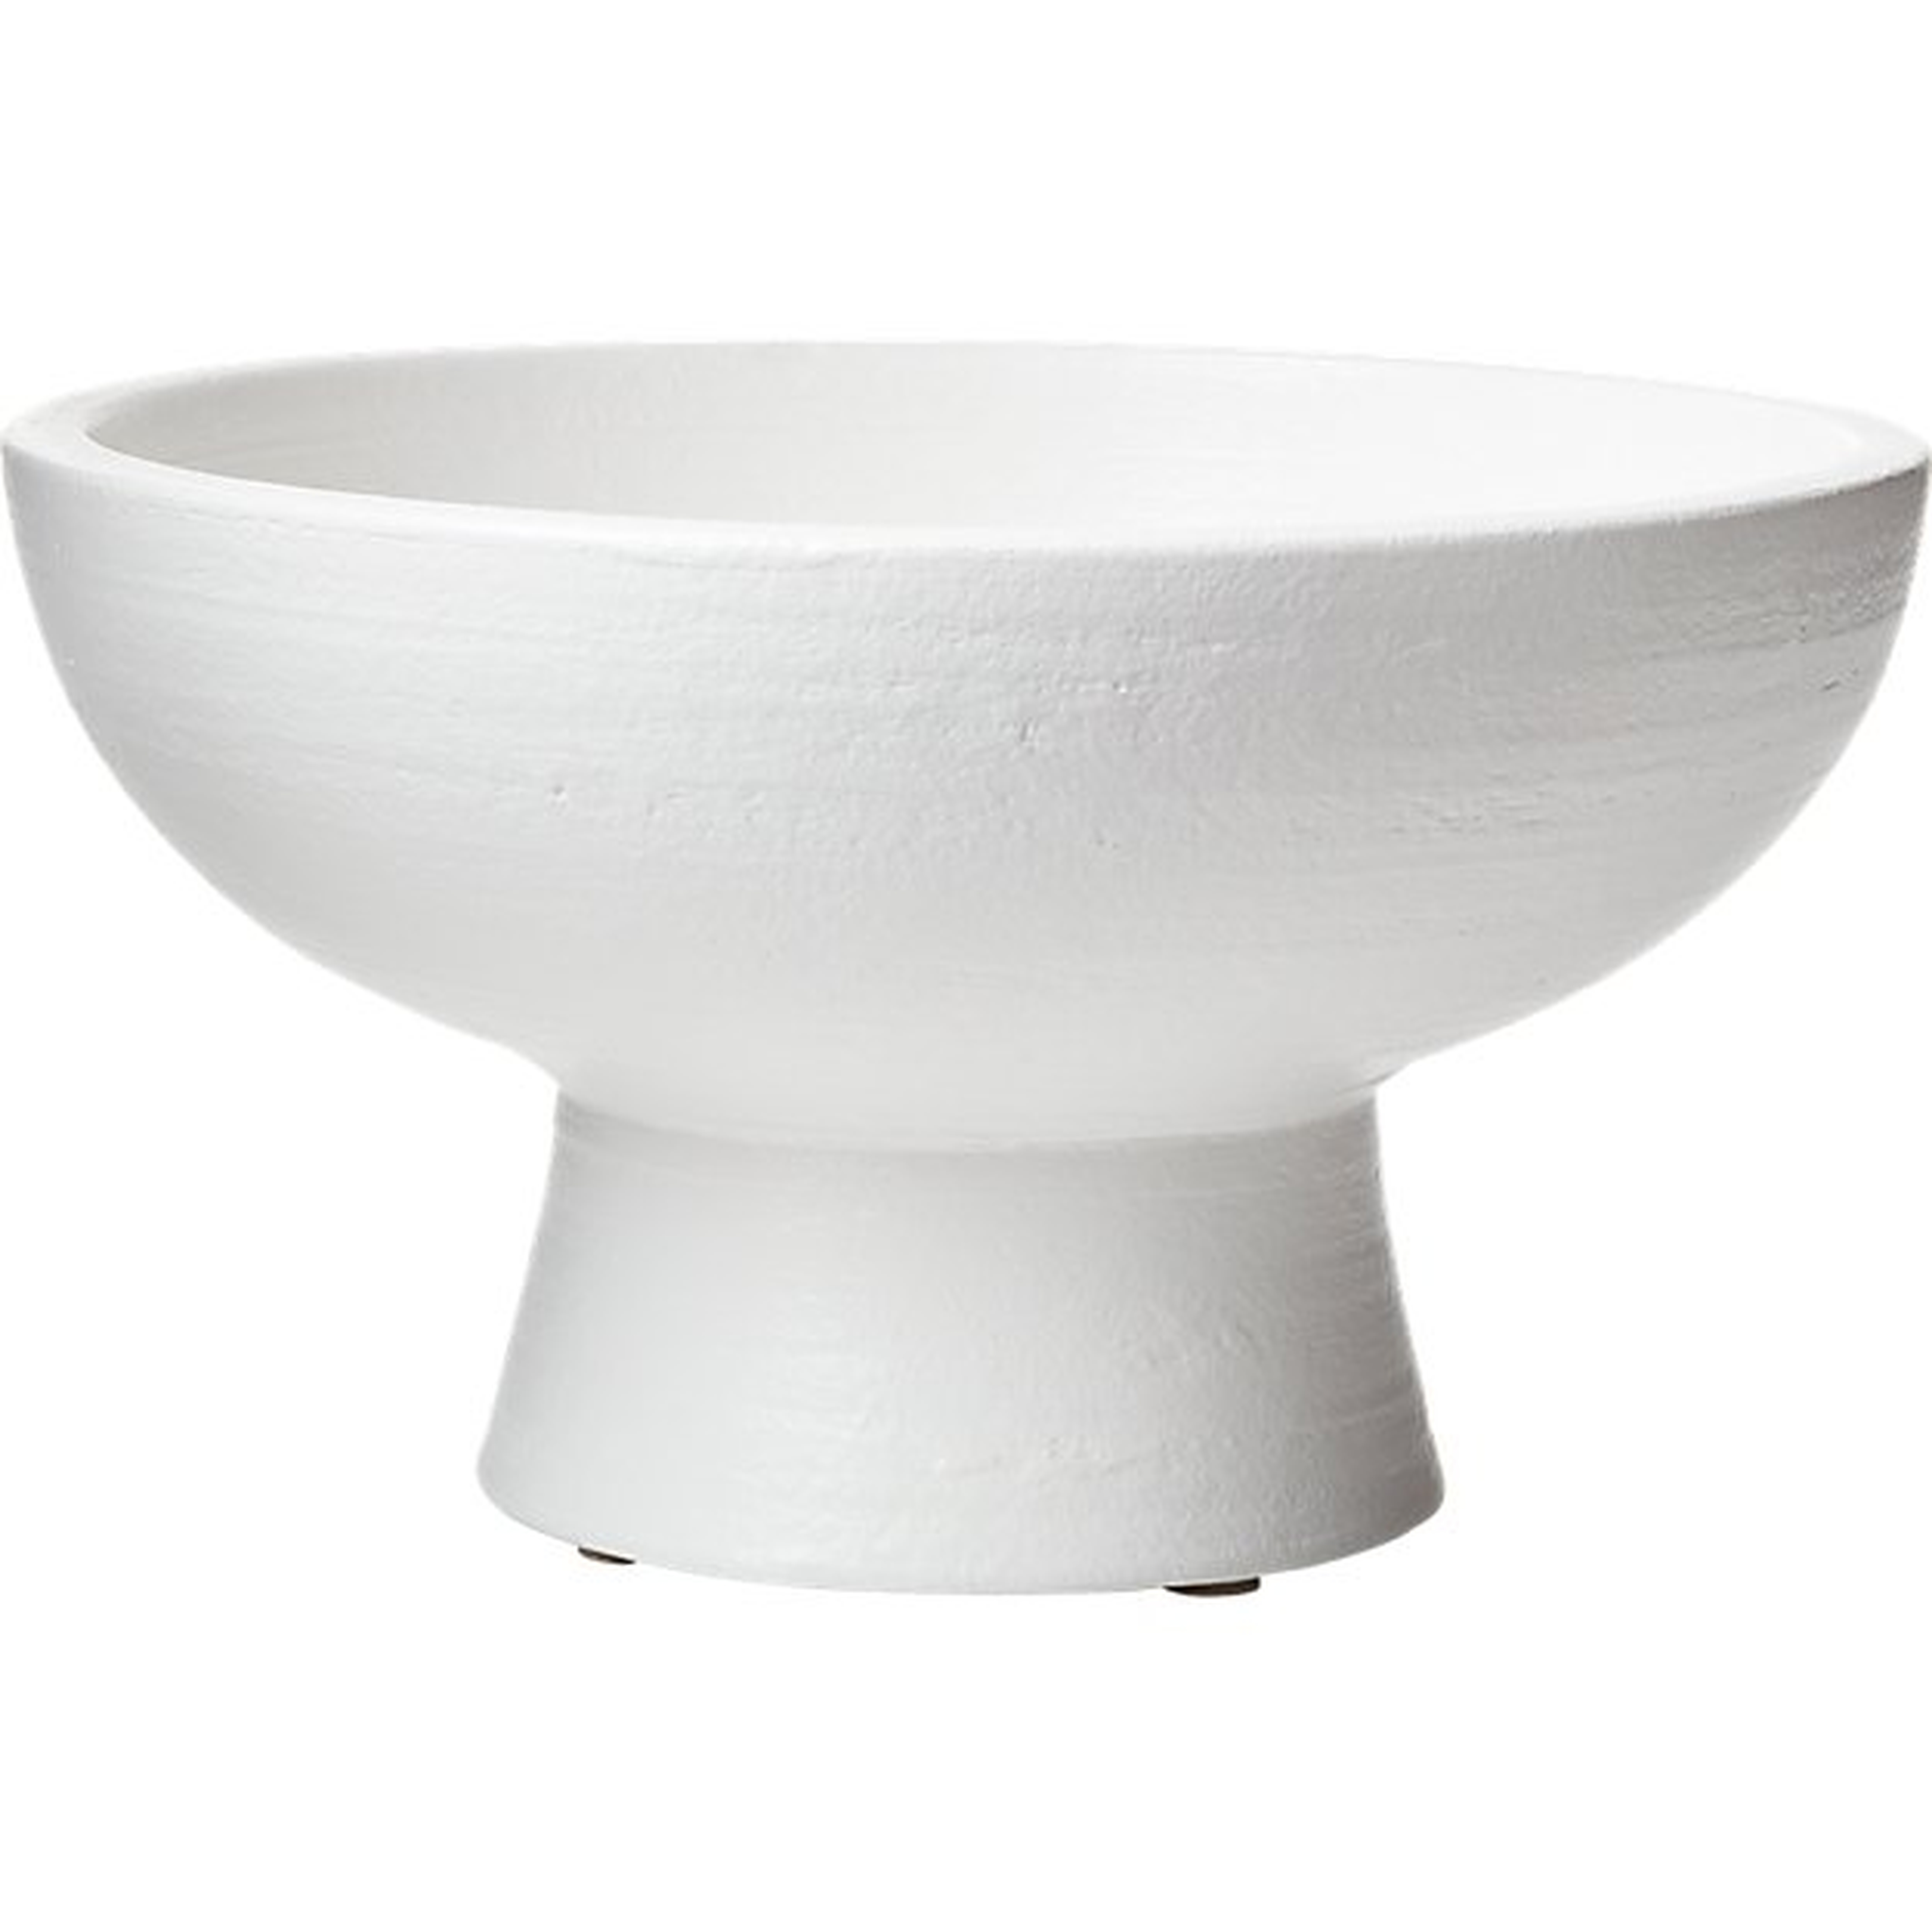 White Pedestal Bowl - CB2